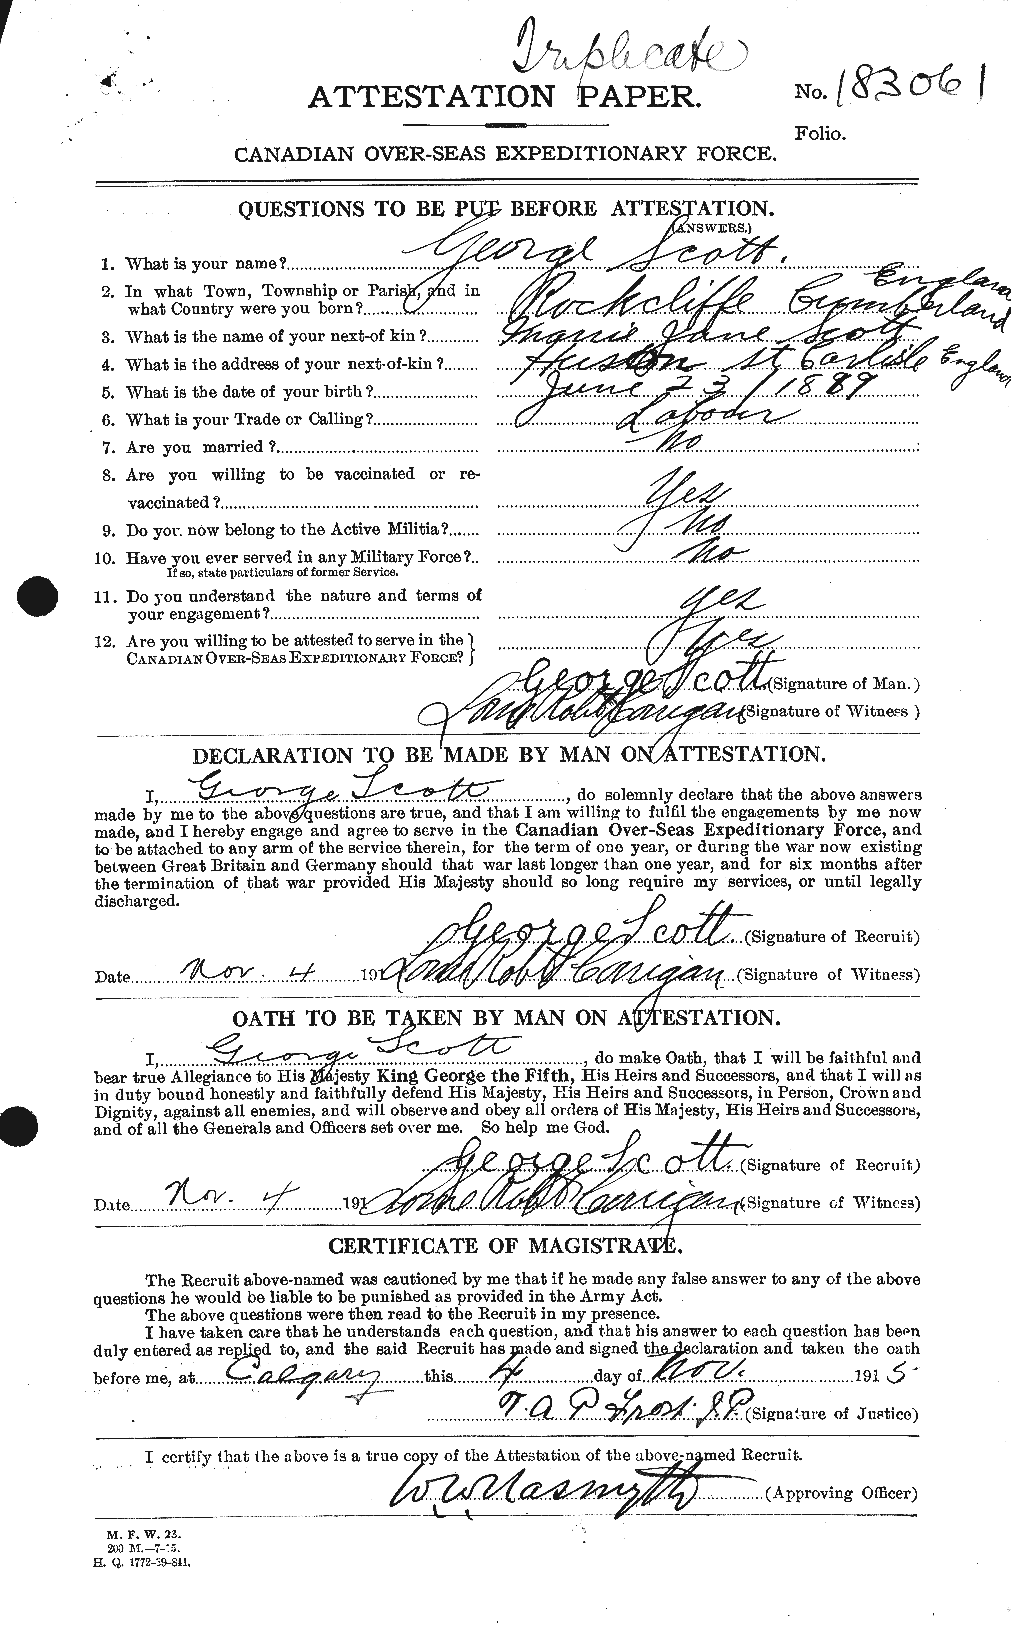 Dossiers du Personnel de la Première Guerre mondiale - CEC 084357a